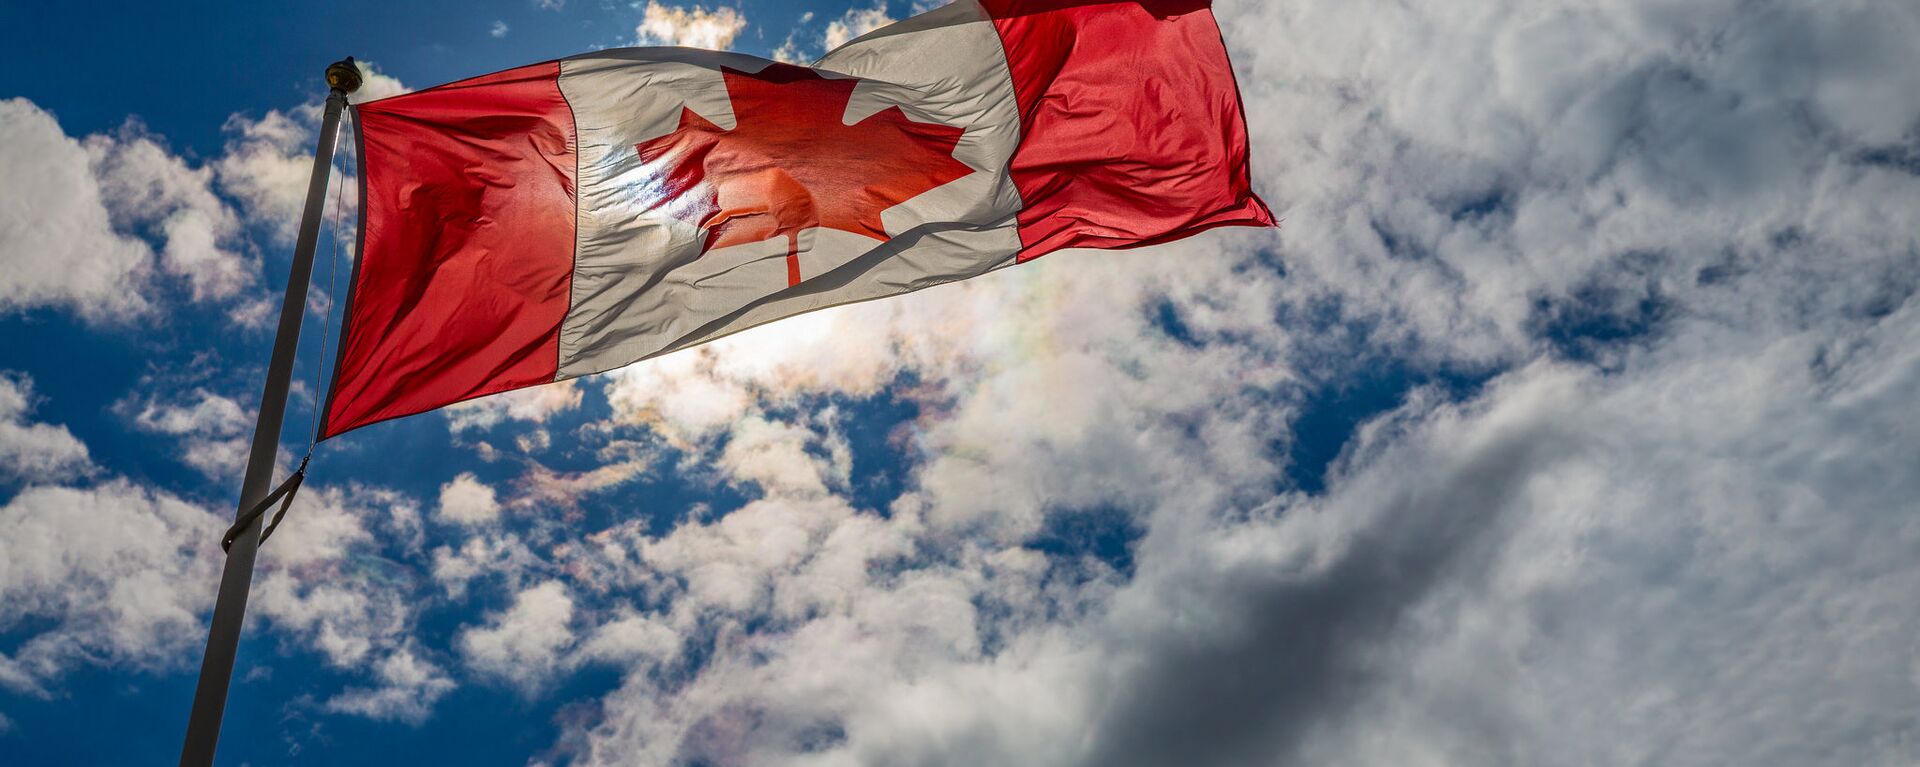 Canadian Flag - Sputnik International, 1920, 23.02.2021